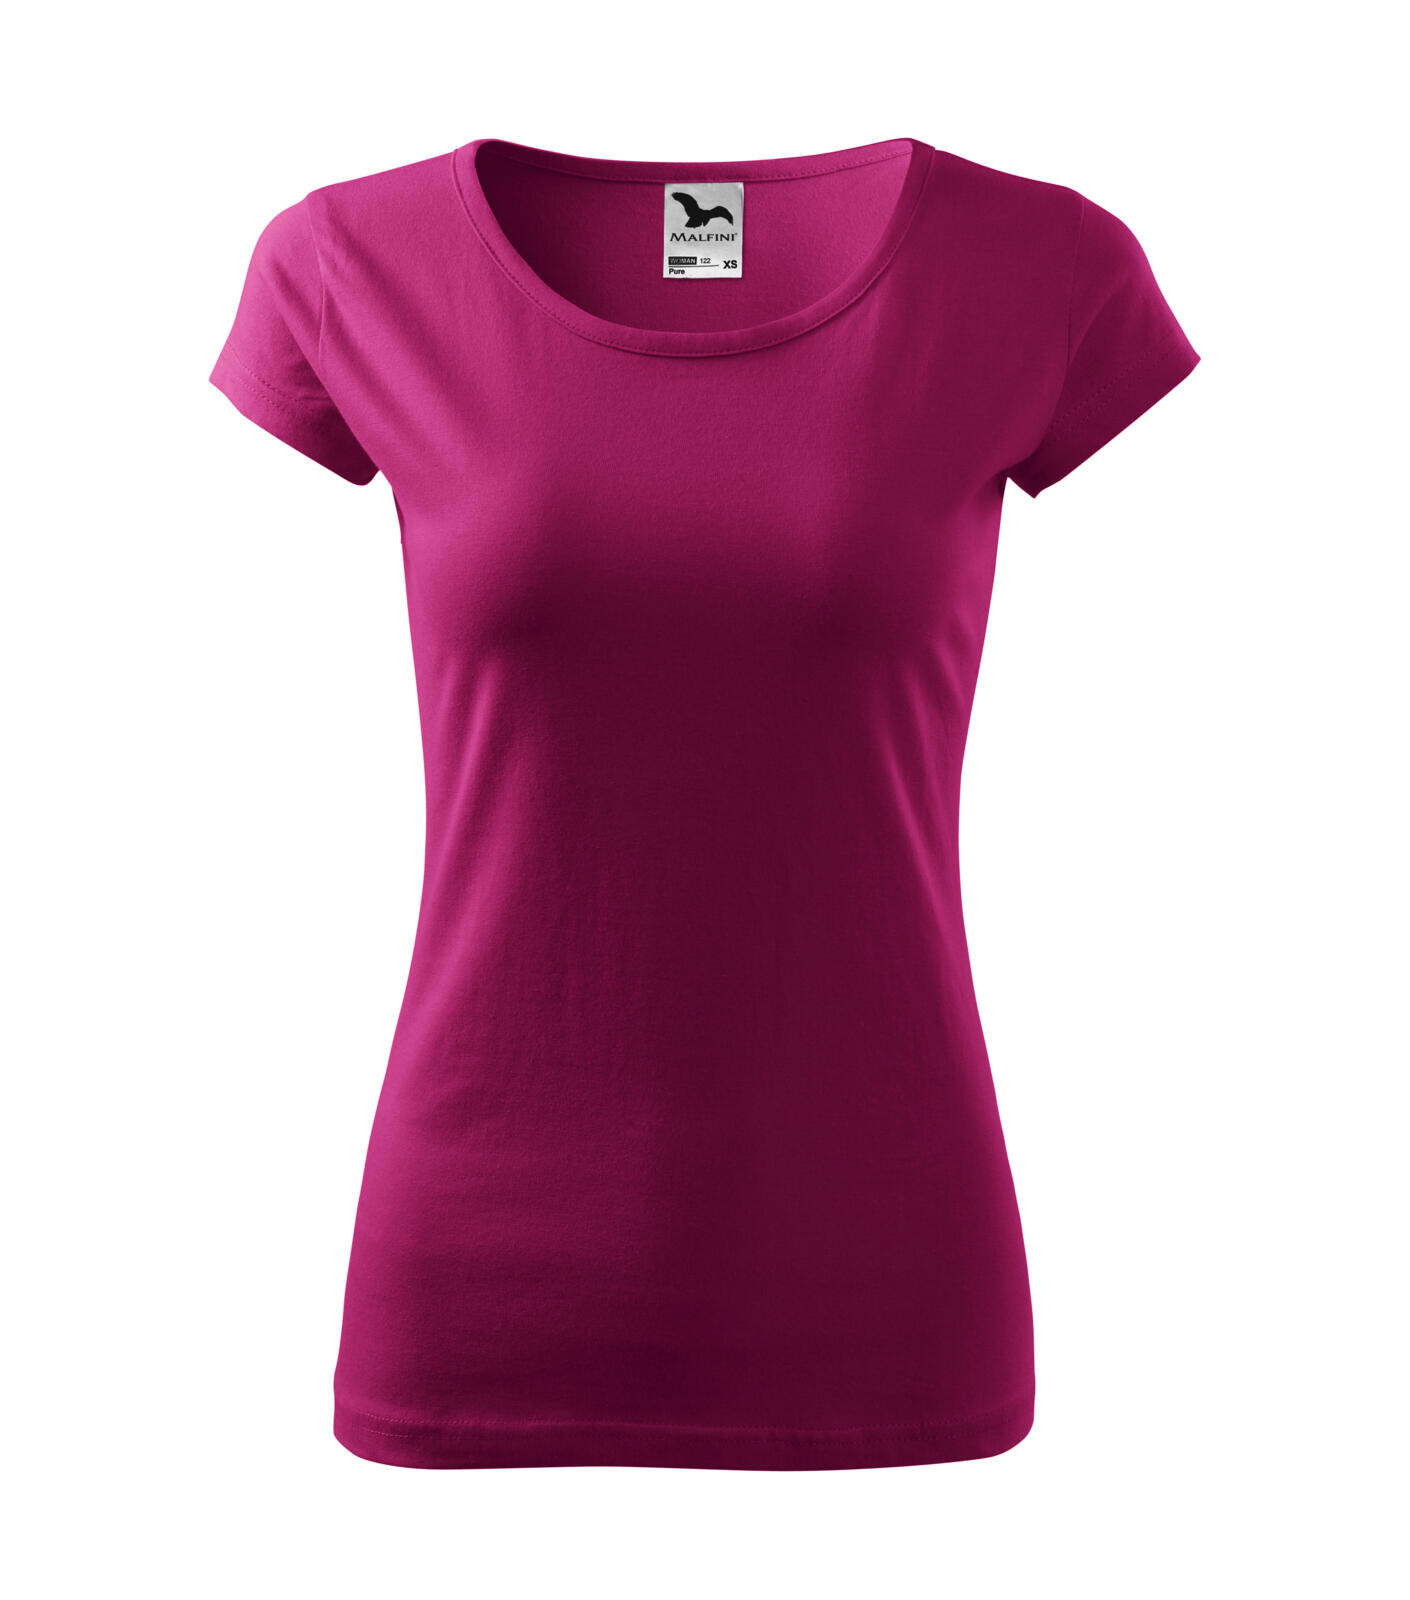 Dámske bavlnené tričko Malfini Pure 122 - veľkosť: S, farba: fuchsia red